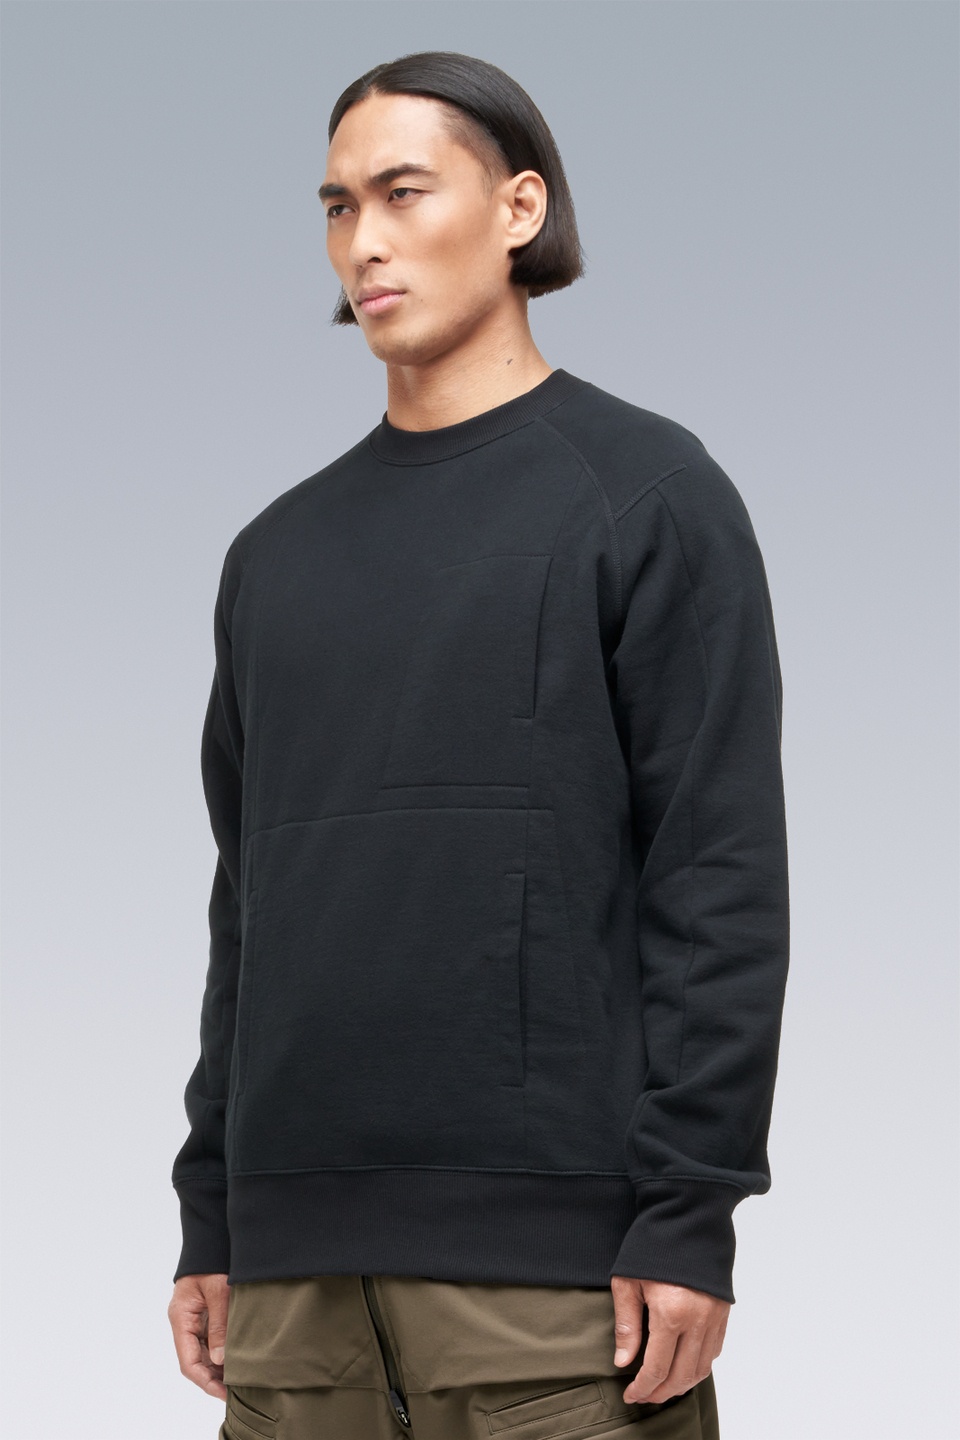 S14-BR Cotton Crewneck Sweatshirt Black - 4